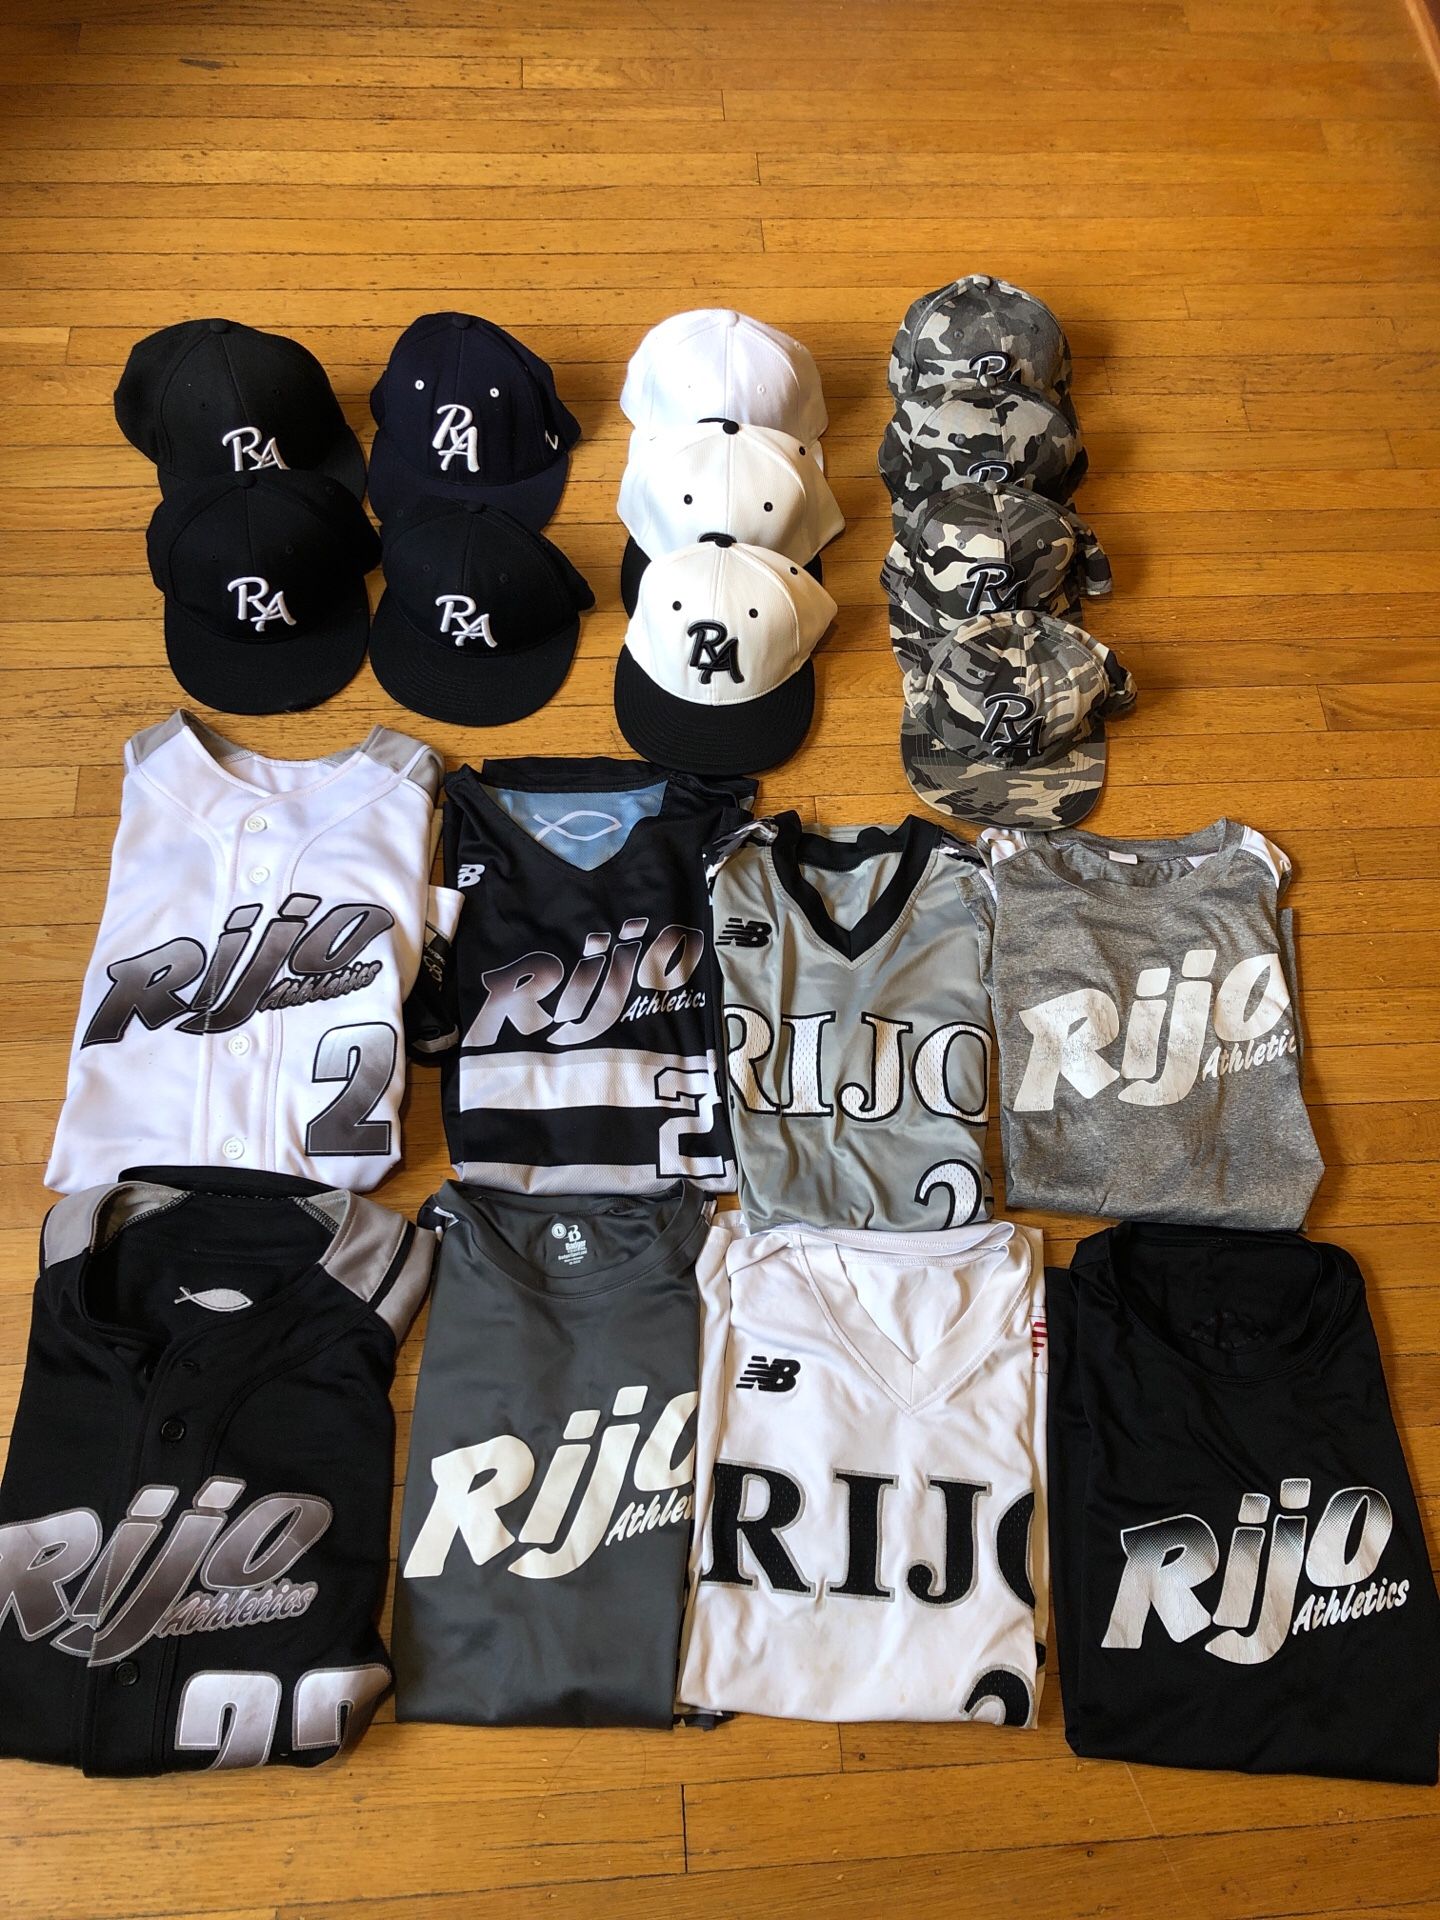 Rijo Athletics jerseys and baseball hats